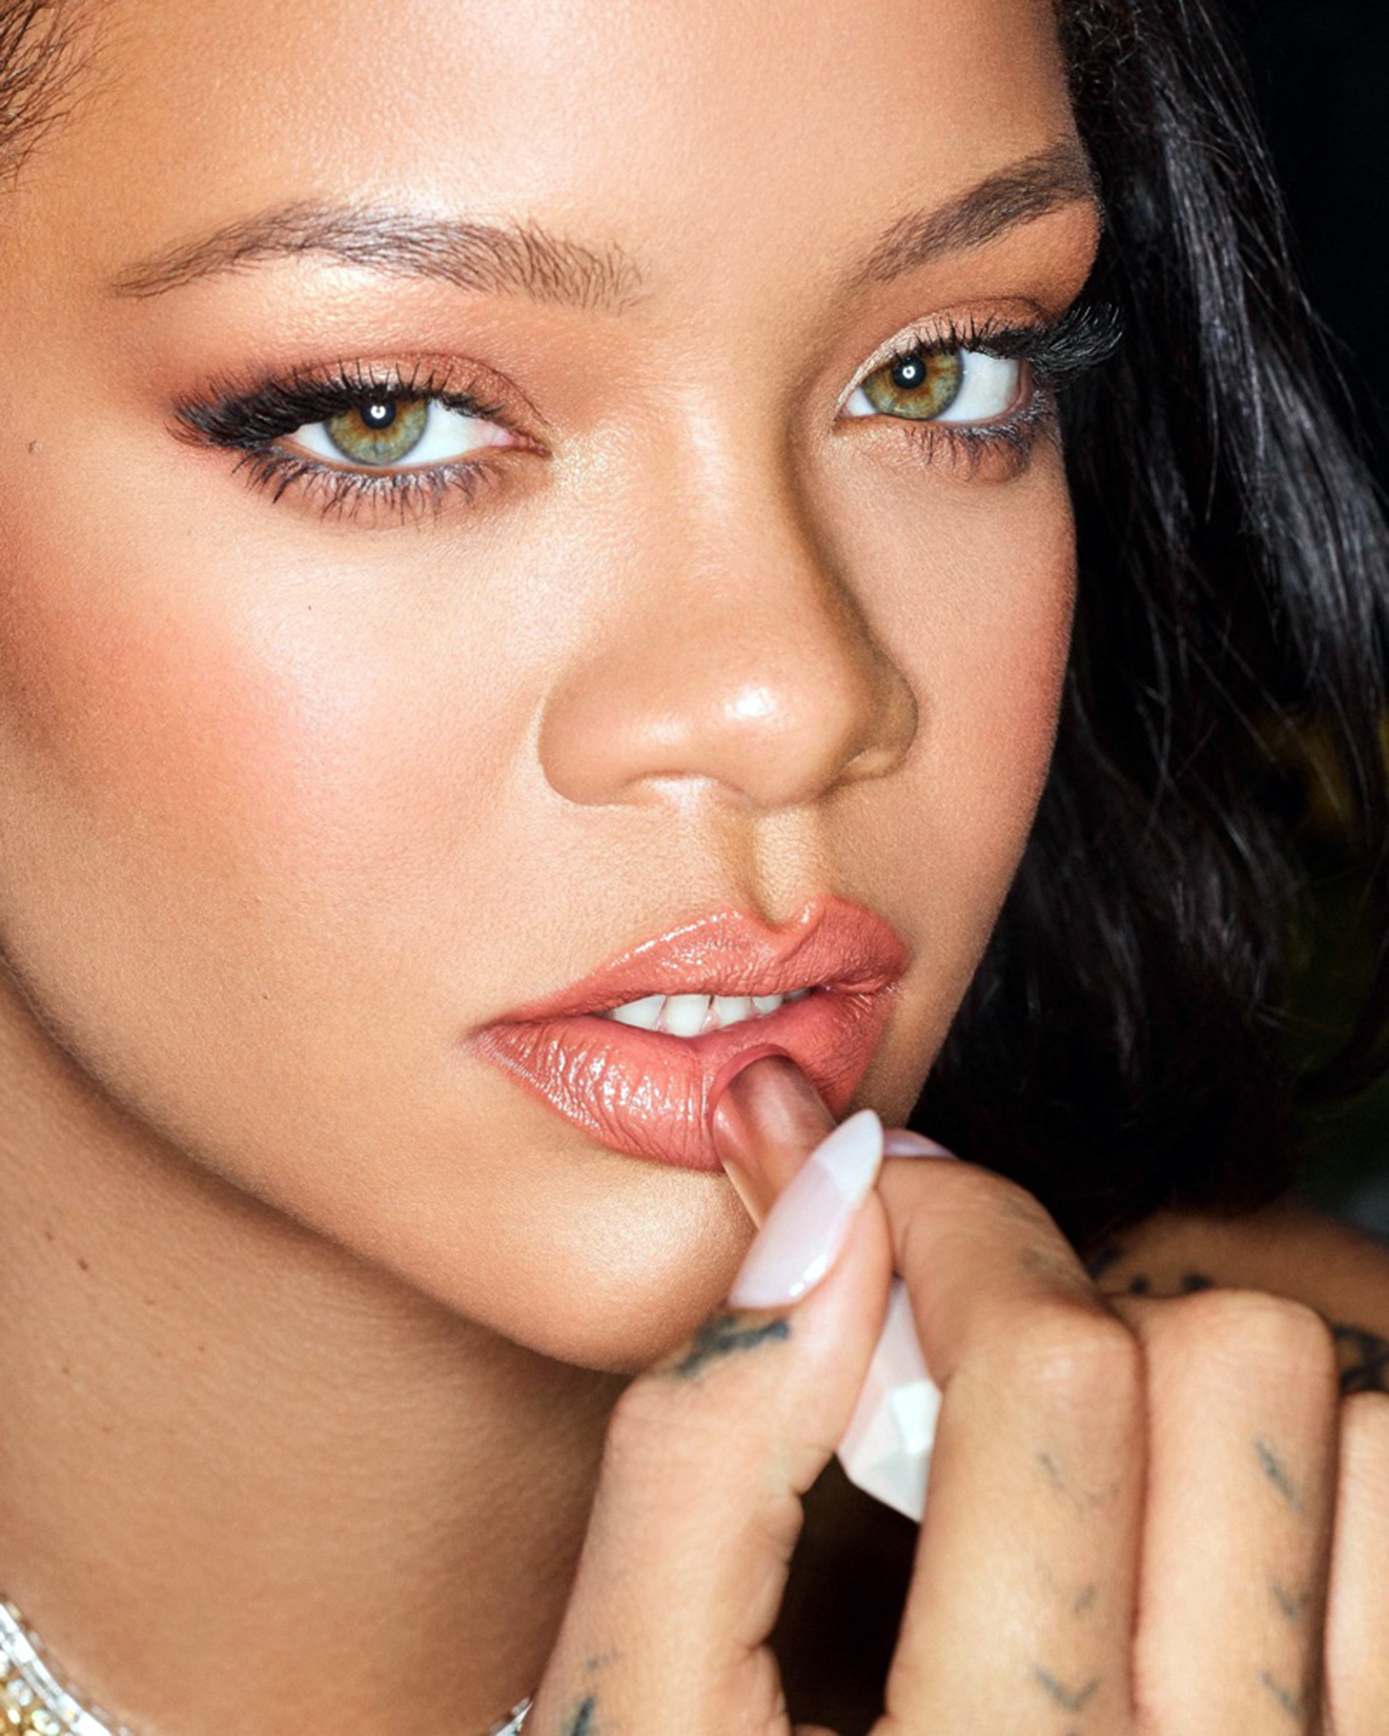 Atenție la neatenție! Rihanna a fost dată în judecată din cauza unei reclame Fenty. Ce i-a cauzat probleme artistei?